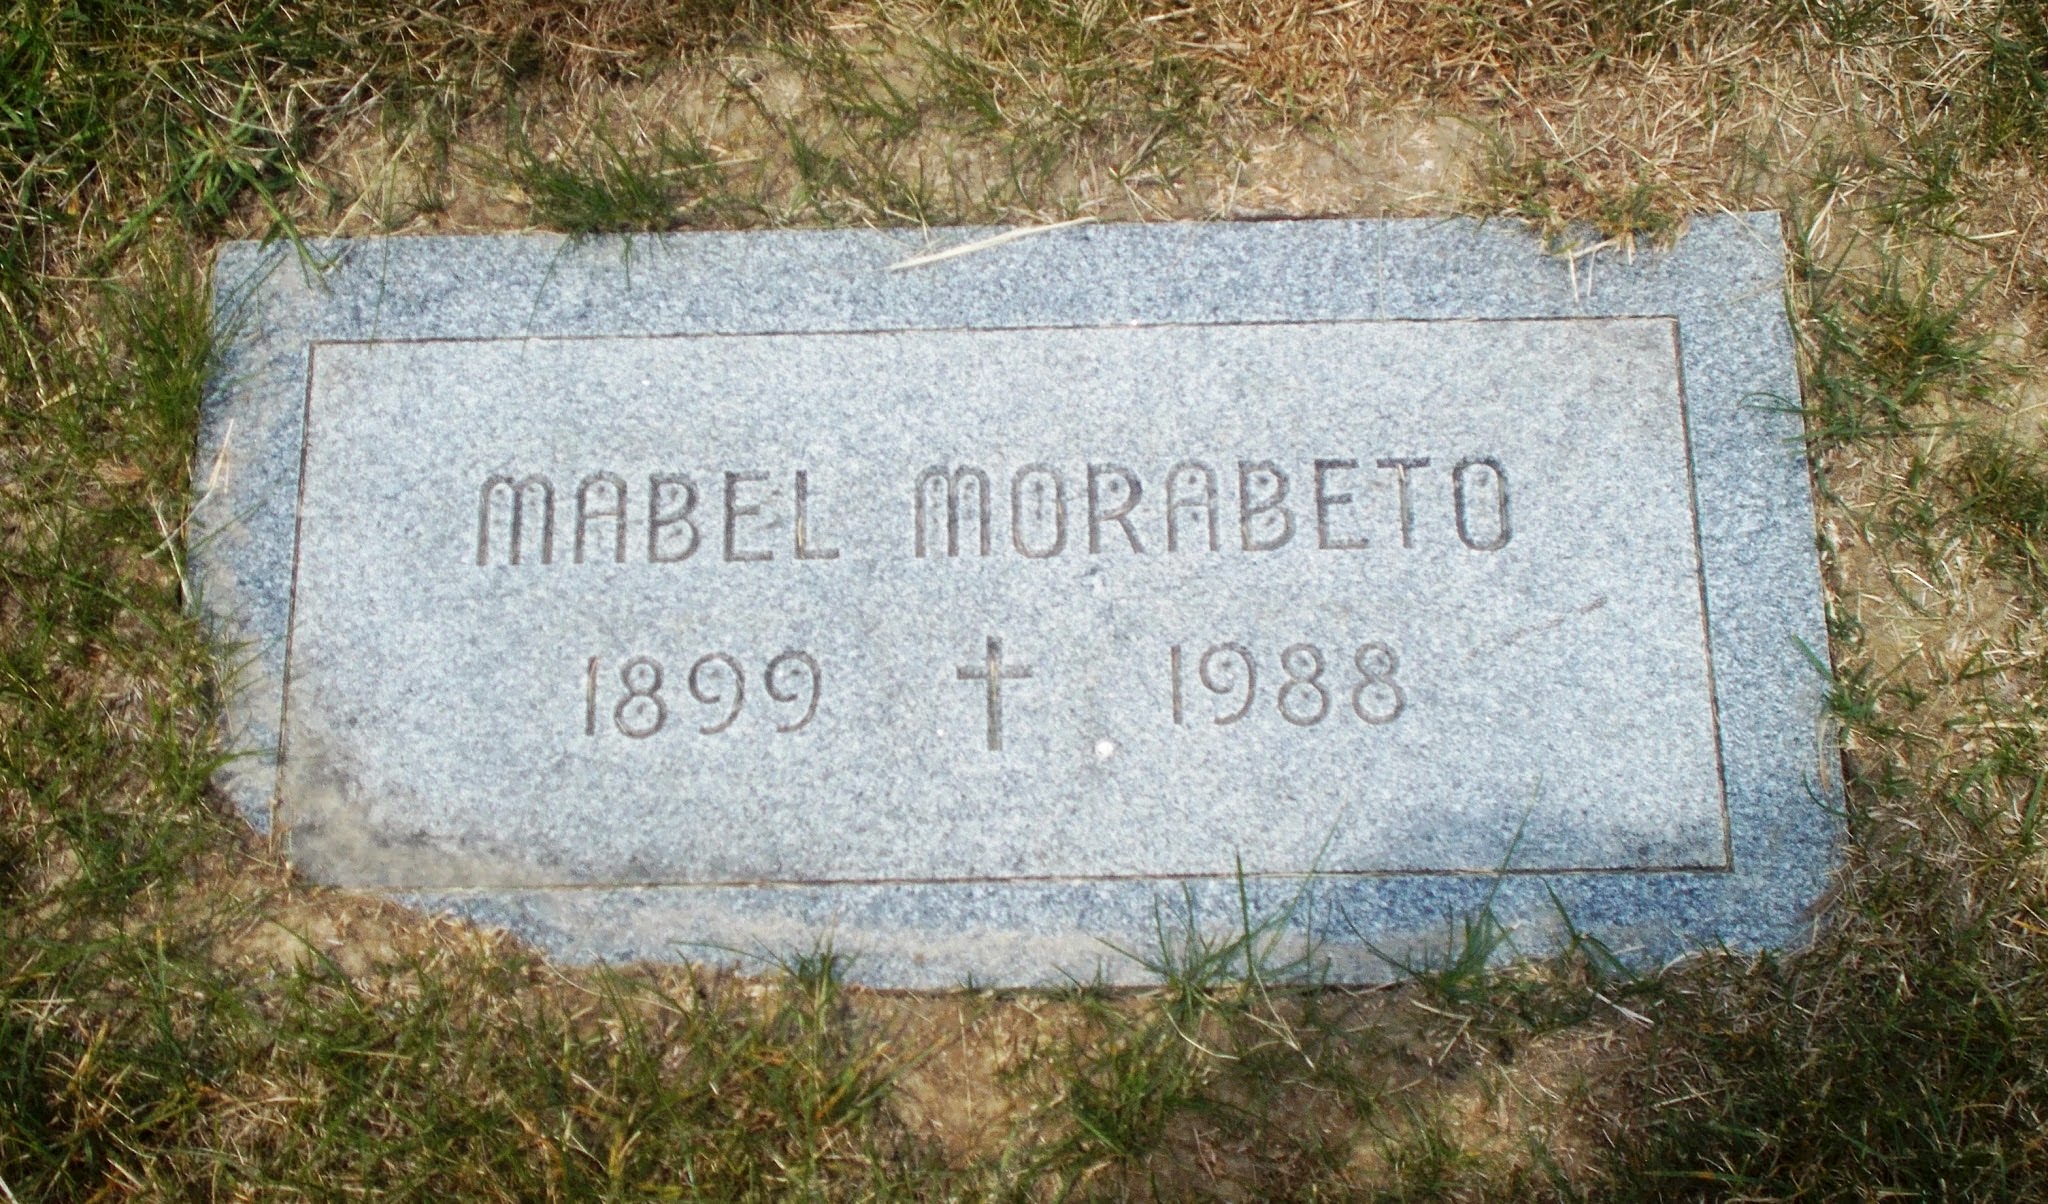 Mabel Morabeto